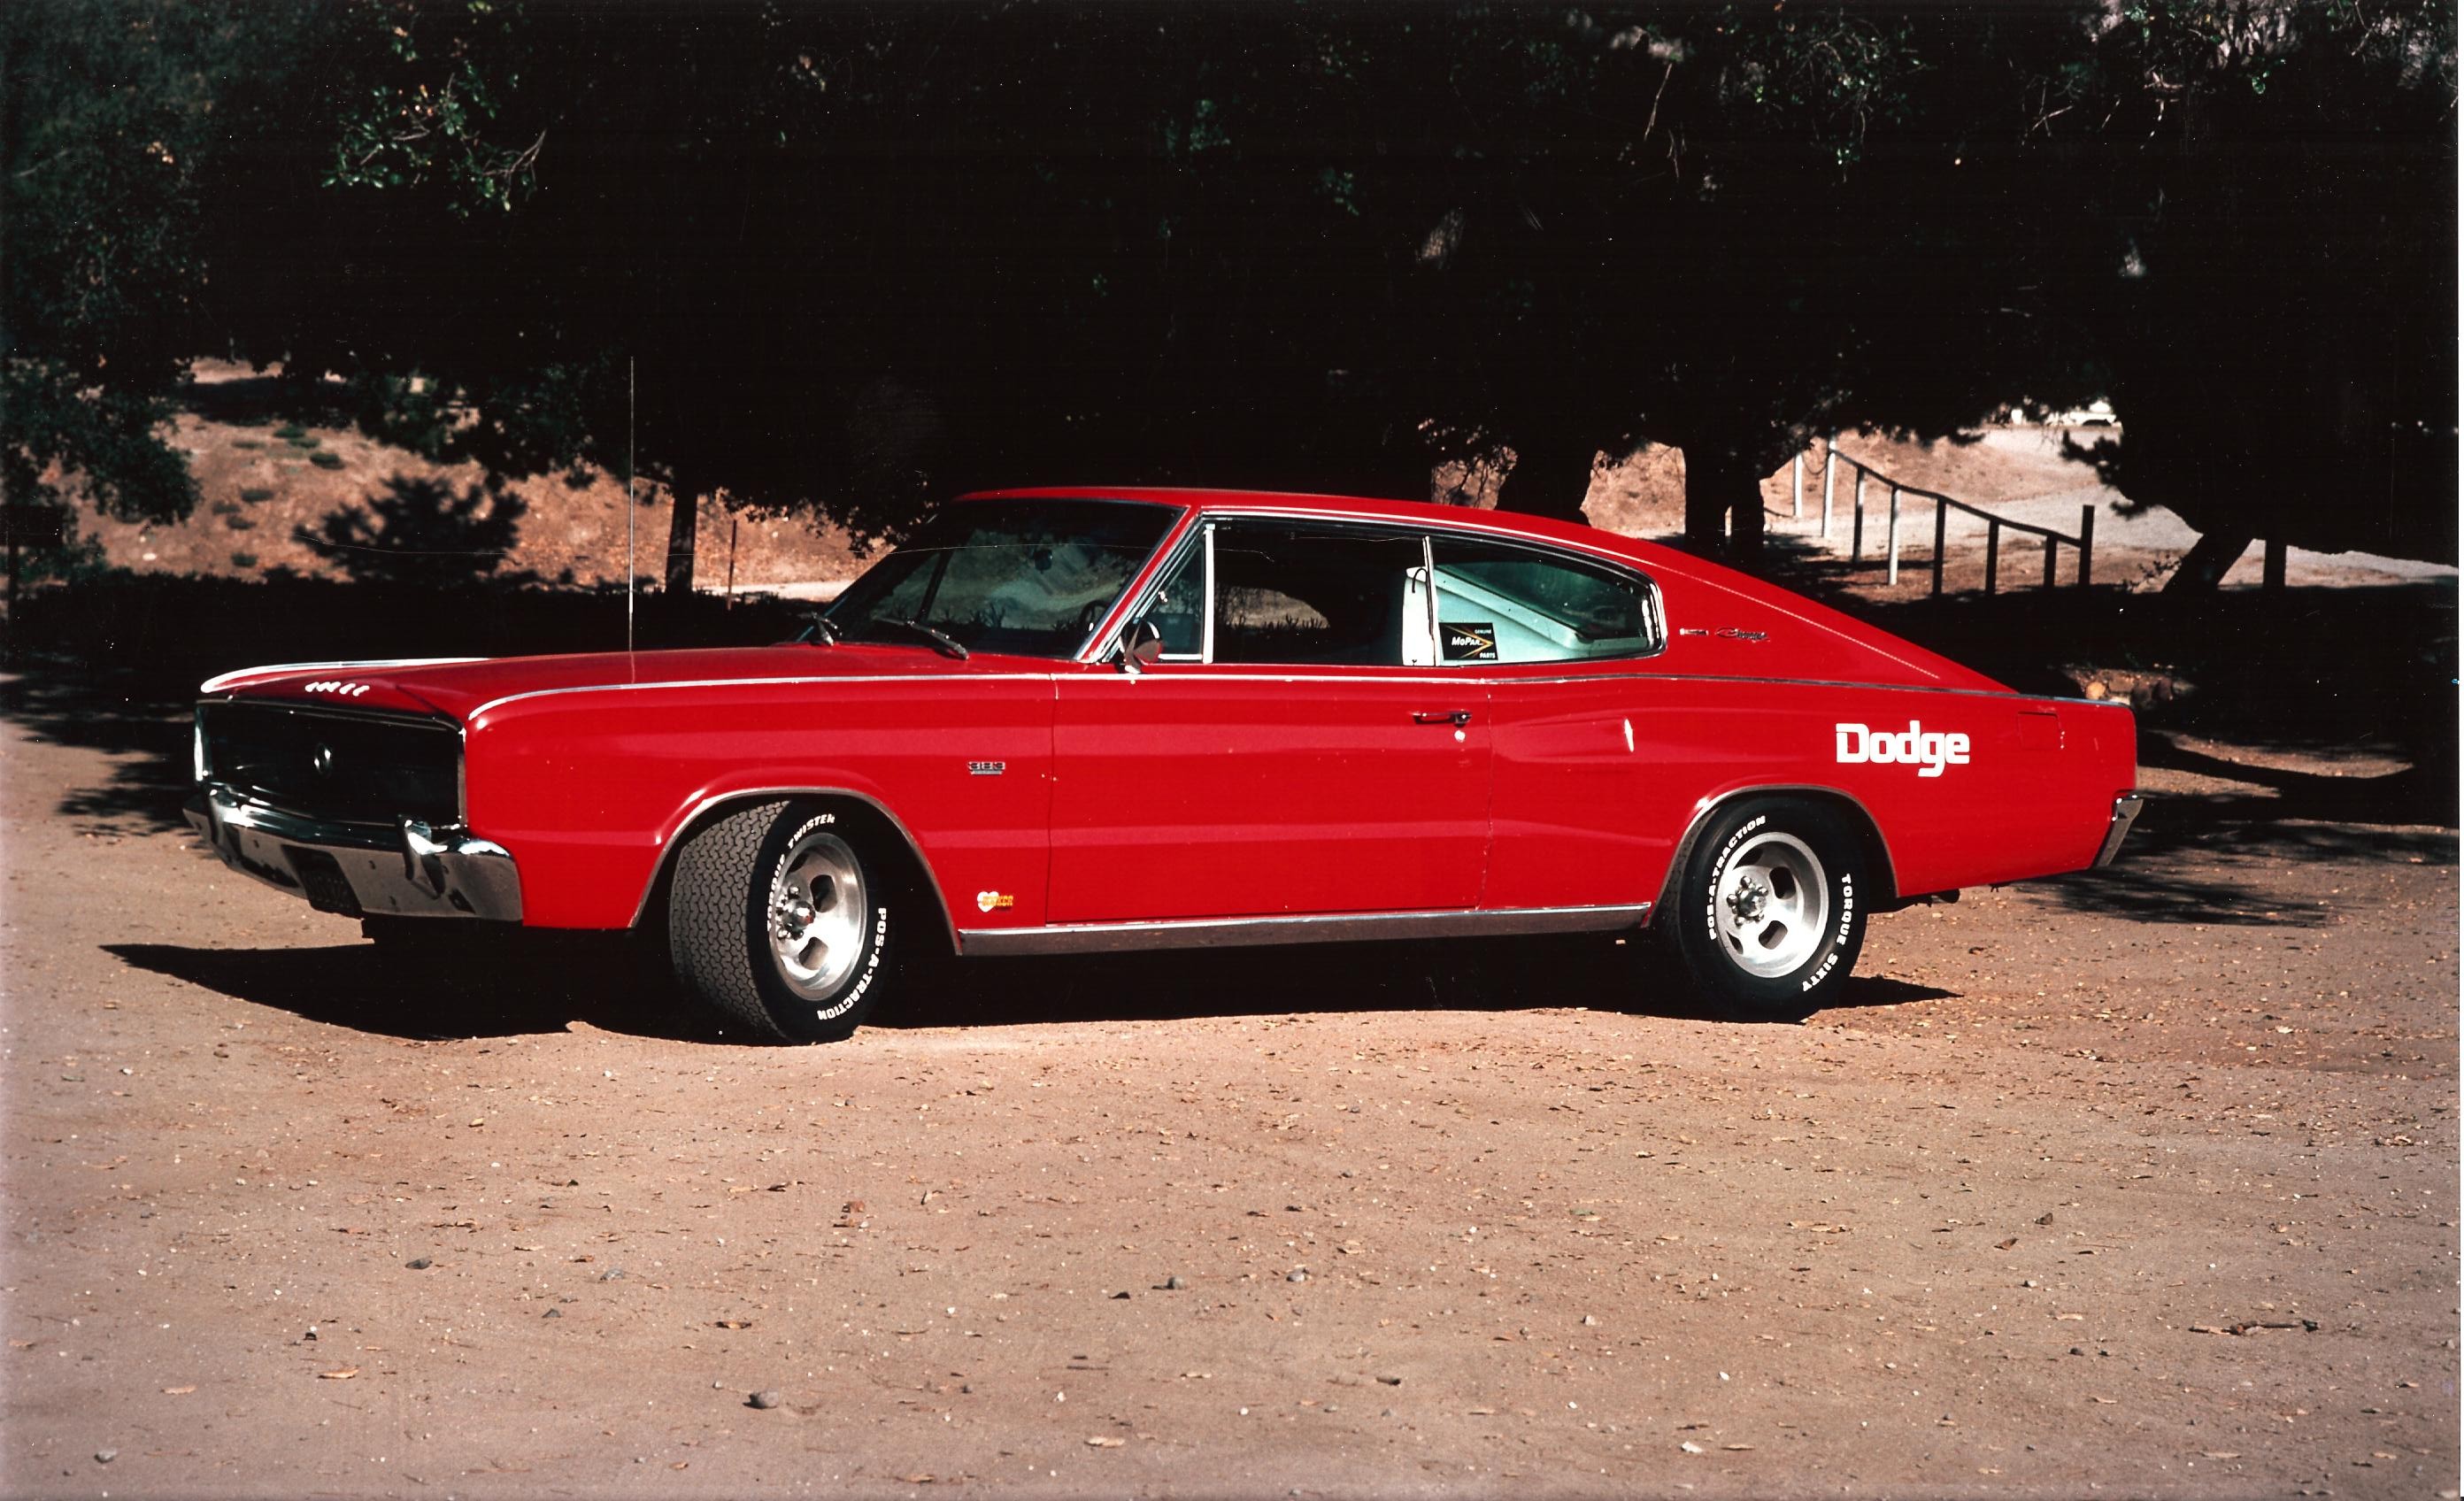  1966 Dodge Charger 2-door fastback